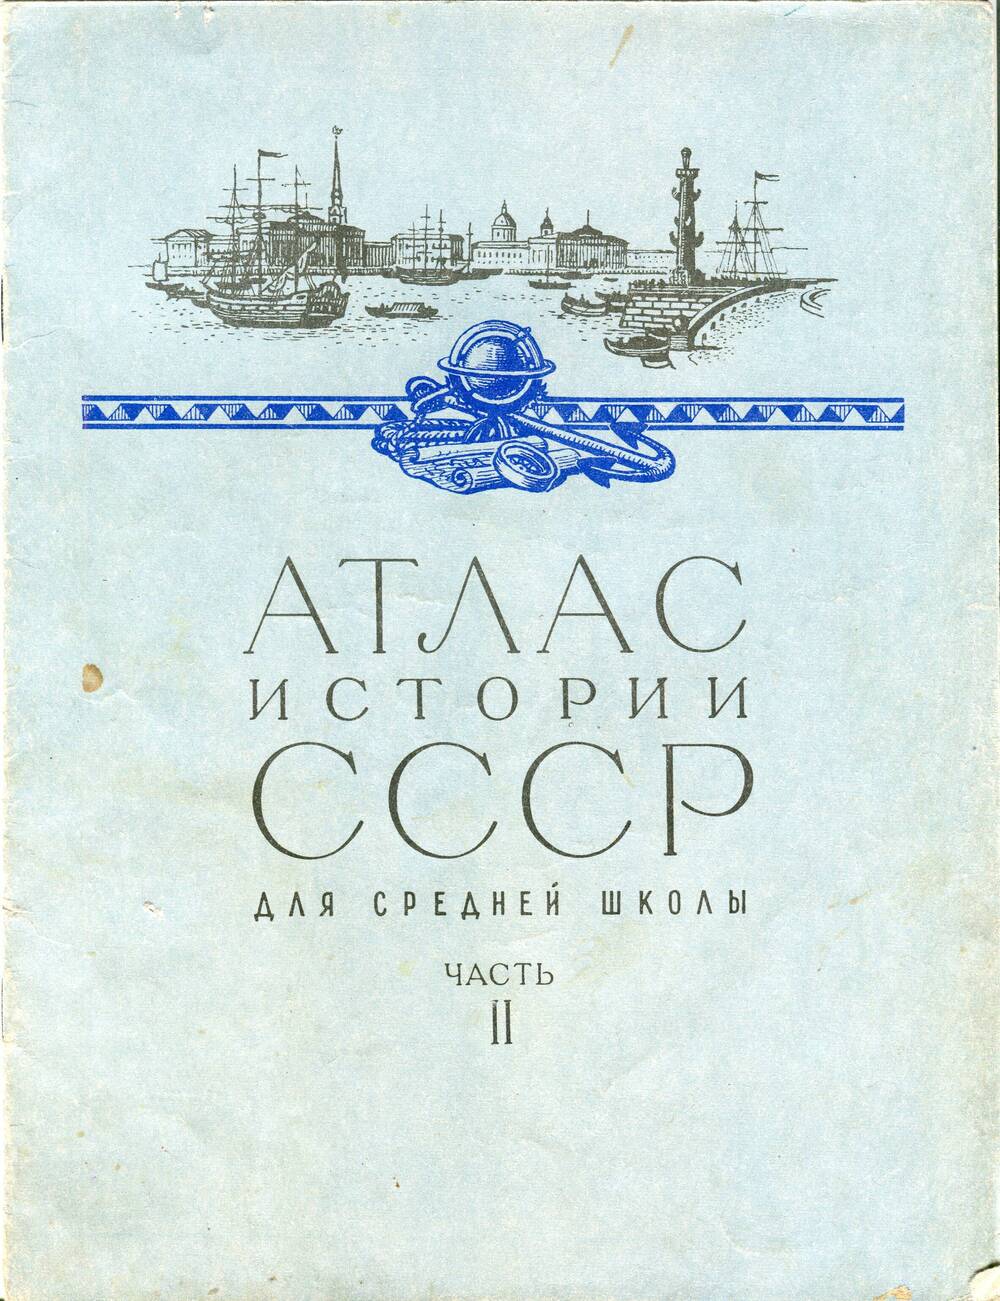 Атлас истории СССР для средней школы. Часть II.